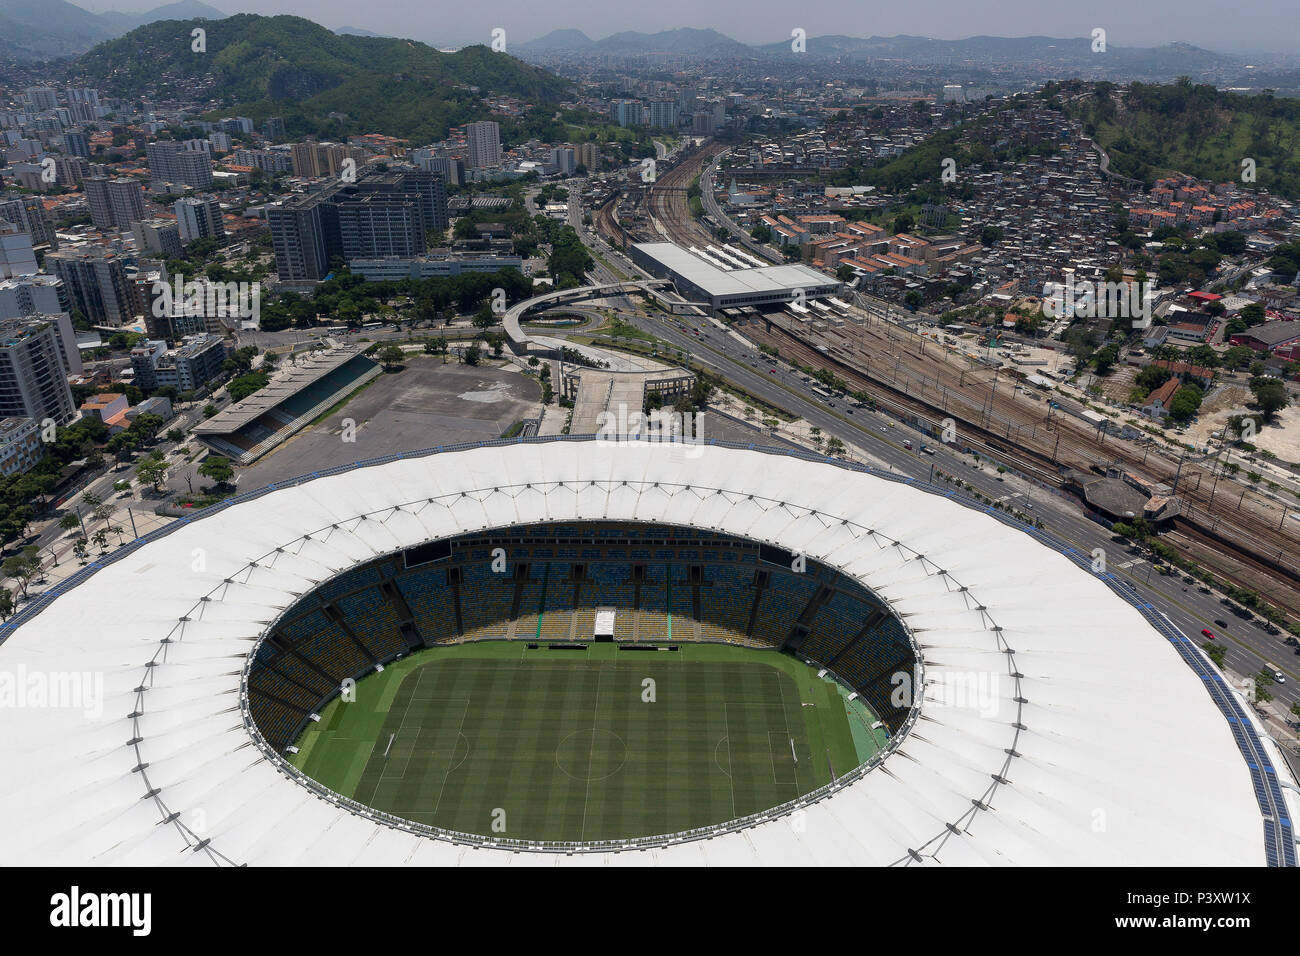 Vista aérea do Estádio Jornalista Mário Filho, Maracana, no Rio de Janeiro. Stock Photo